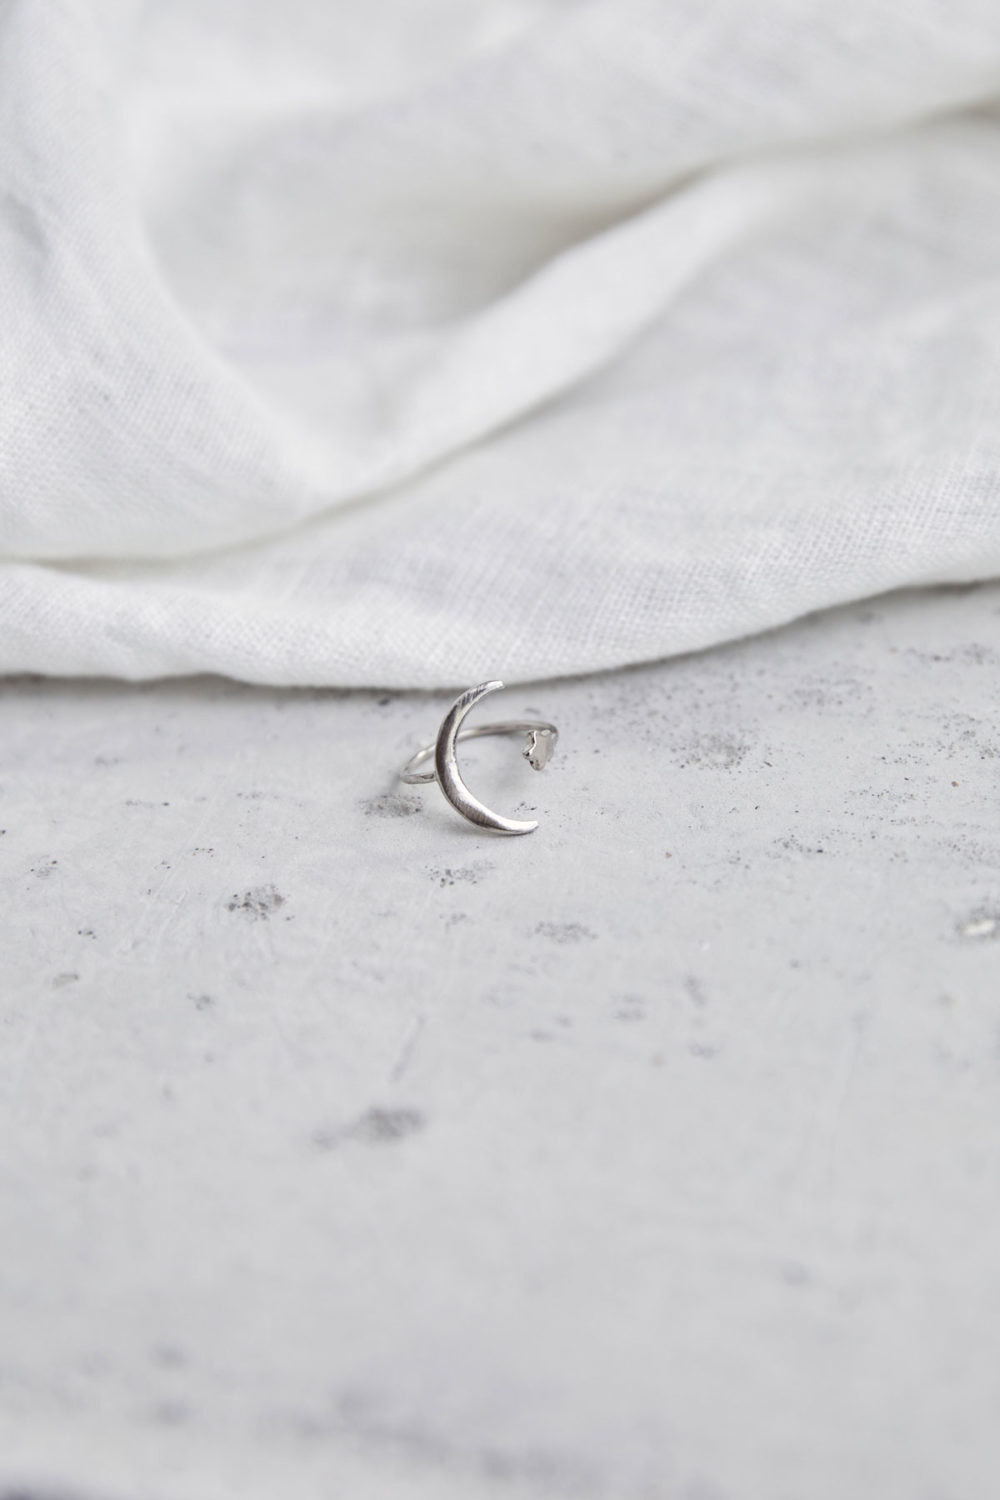 MOONCHILD Ring silber mit Mond Halbmond Mondsichel und Stern. NAIONA, Fingerschmuck, Tuch